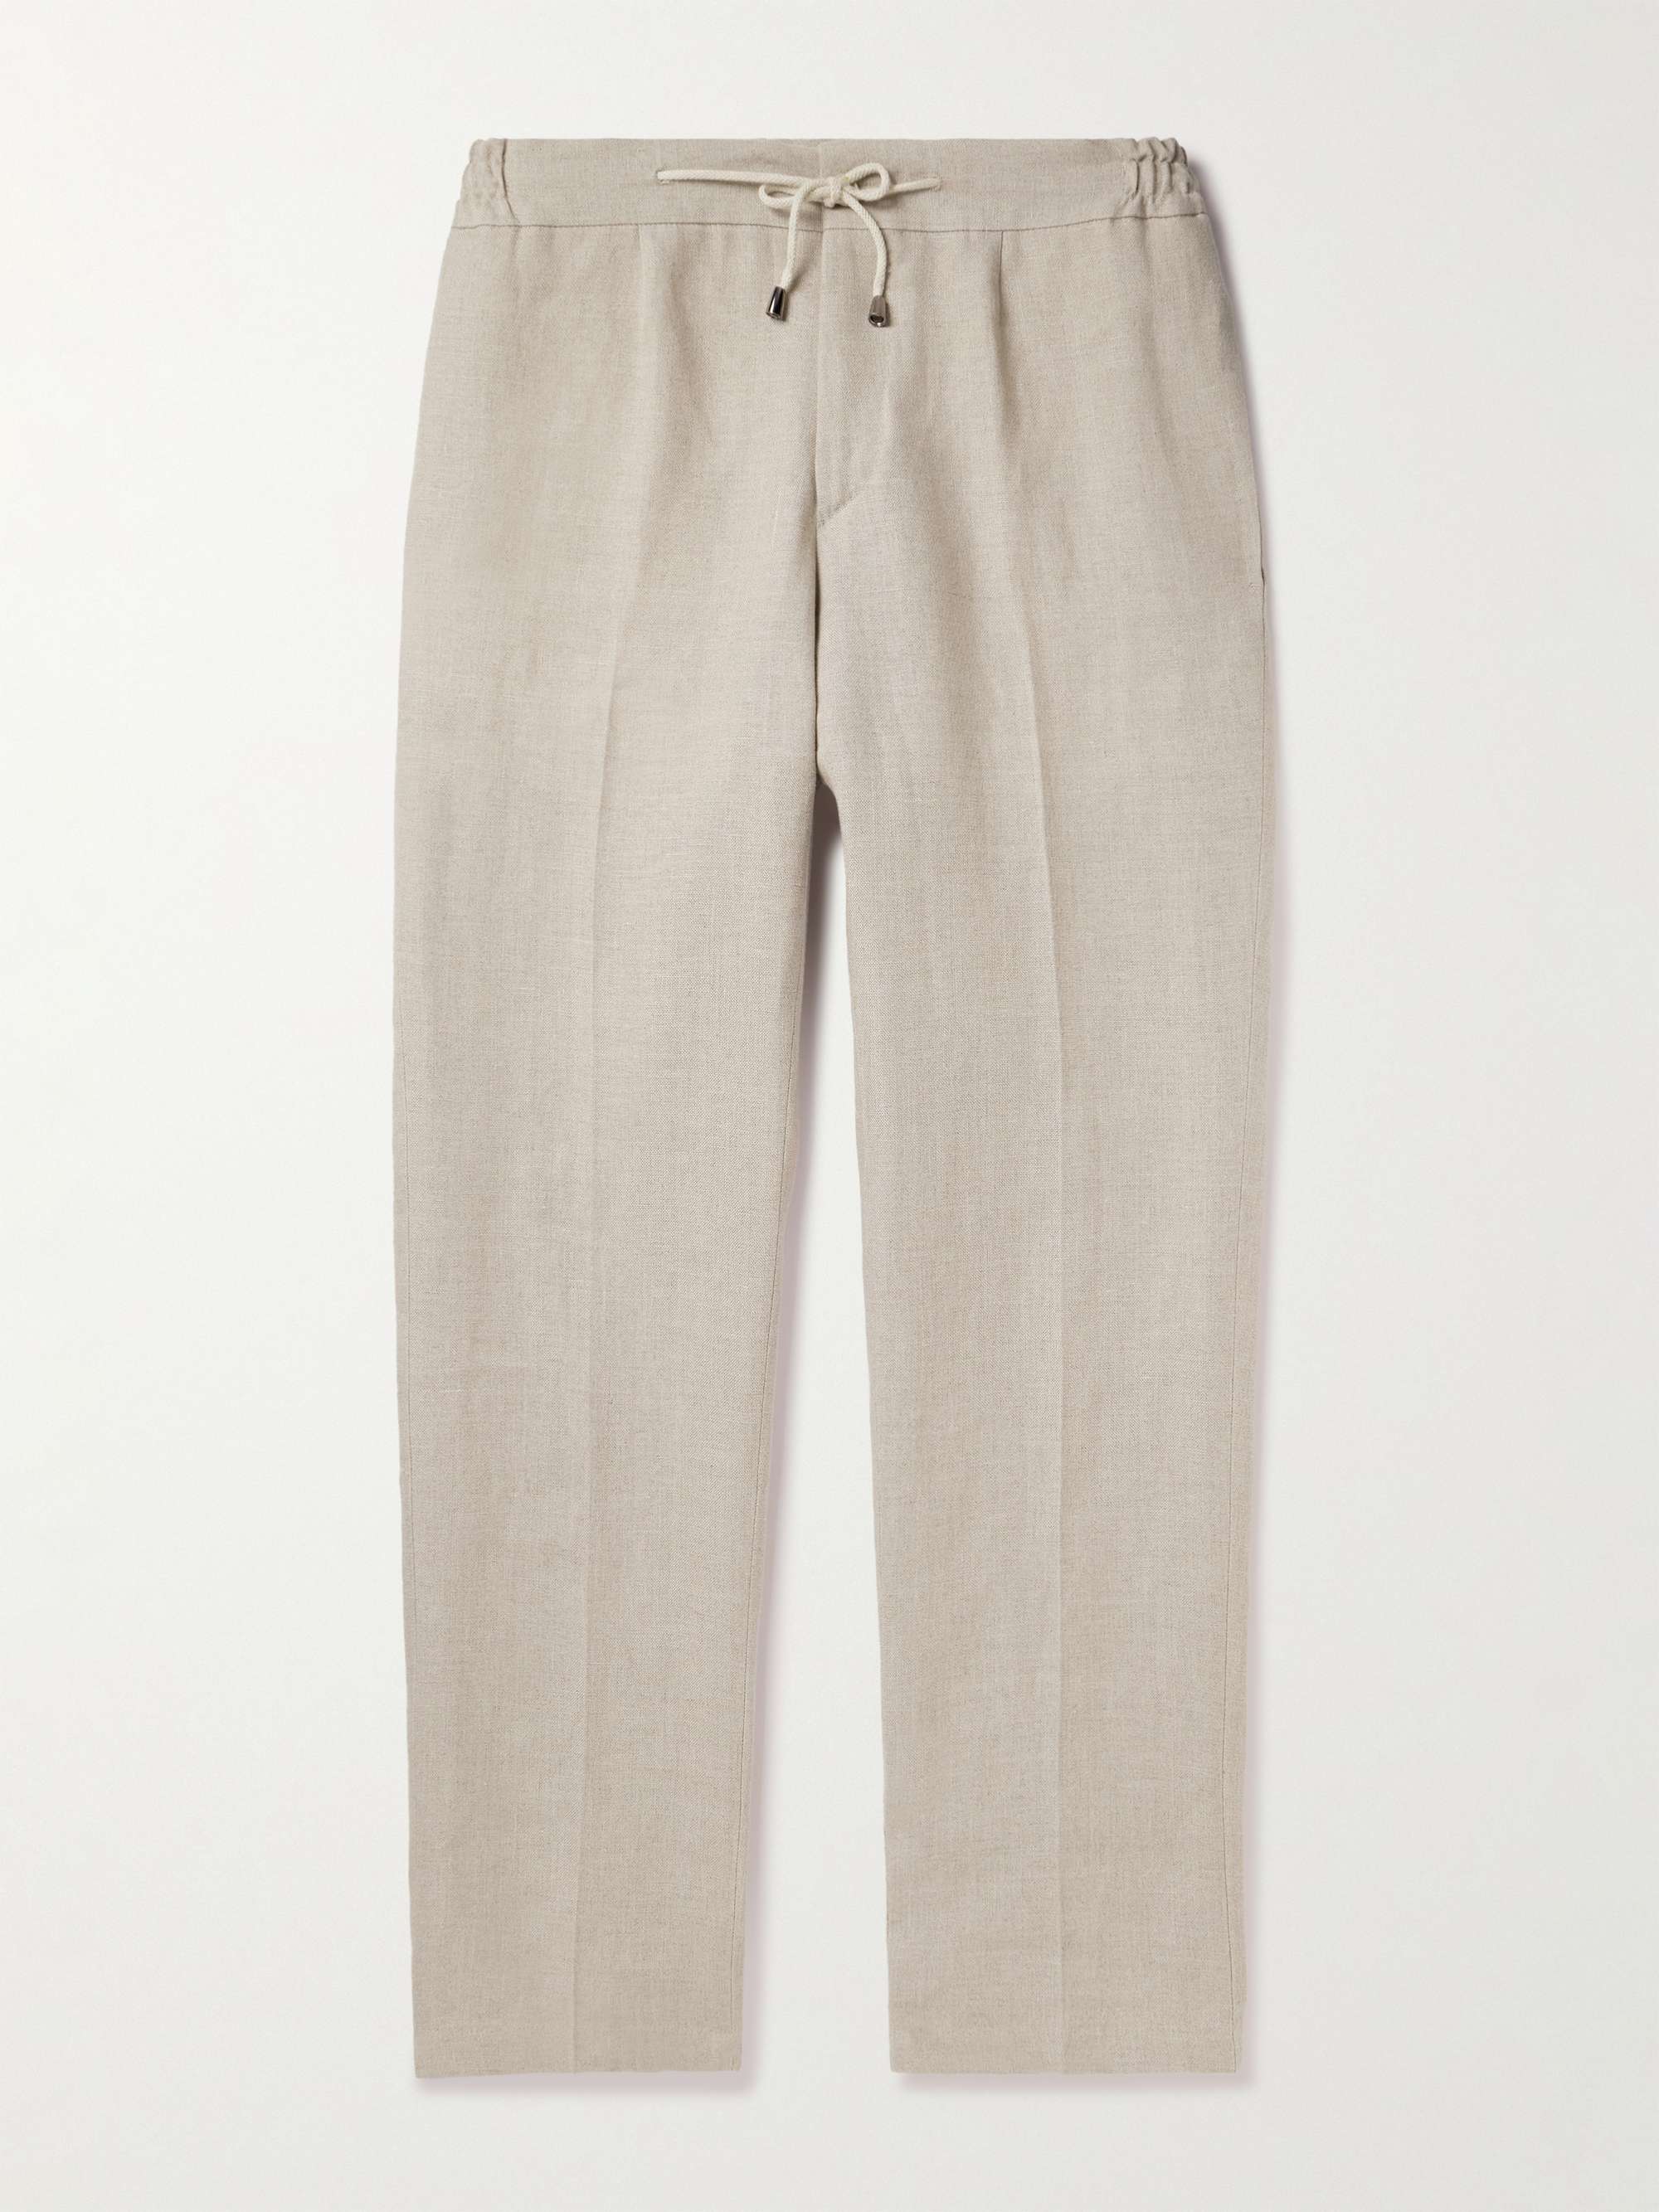 DE PETRILLO Tapered Linen Drawstring Trousers for Men | MR PORTER